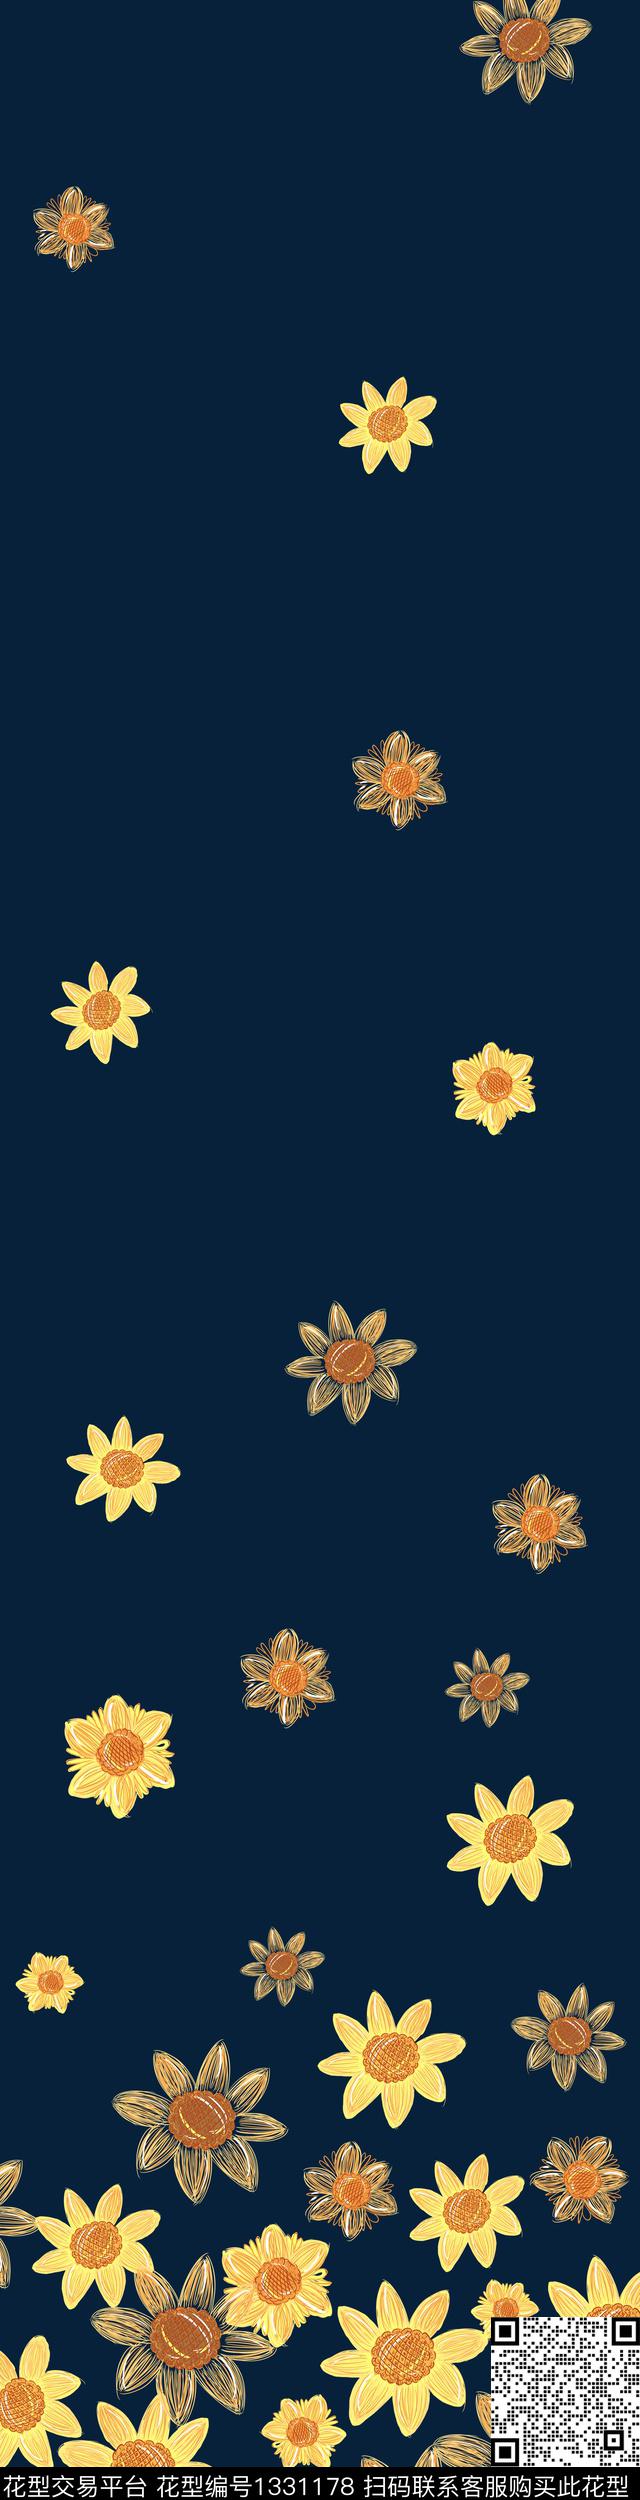 04.jpg - 1331178 - 小雏菊 手绘 向日葵 - 传统印花花型 － 床品花型设计 － 瓦栏